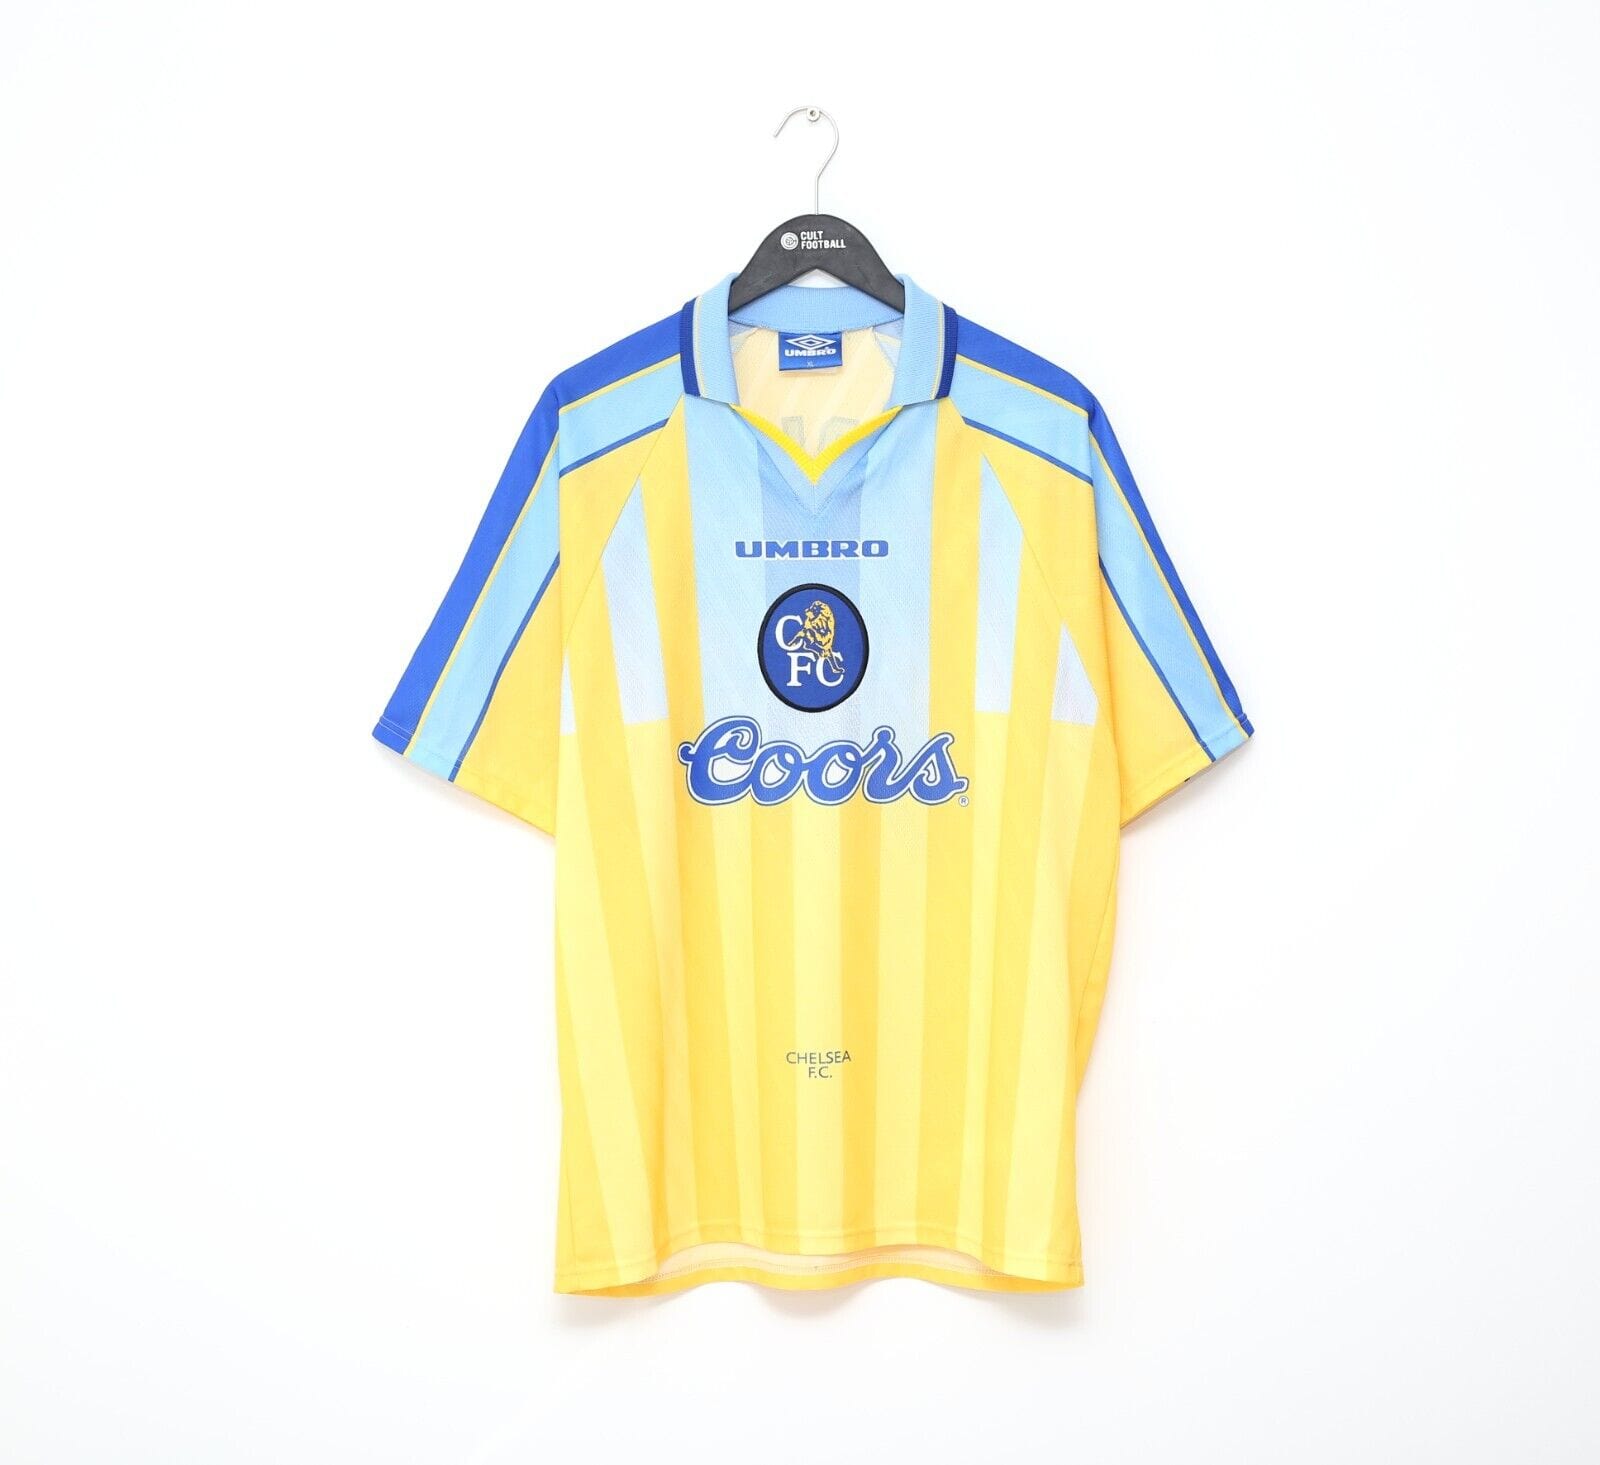 1996s UMBRO Chelsea uniformフリークスストア